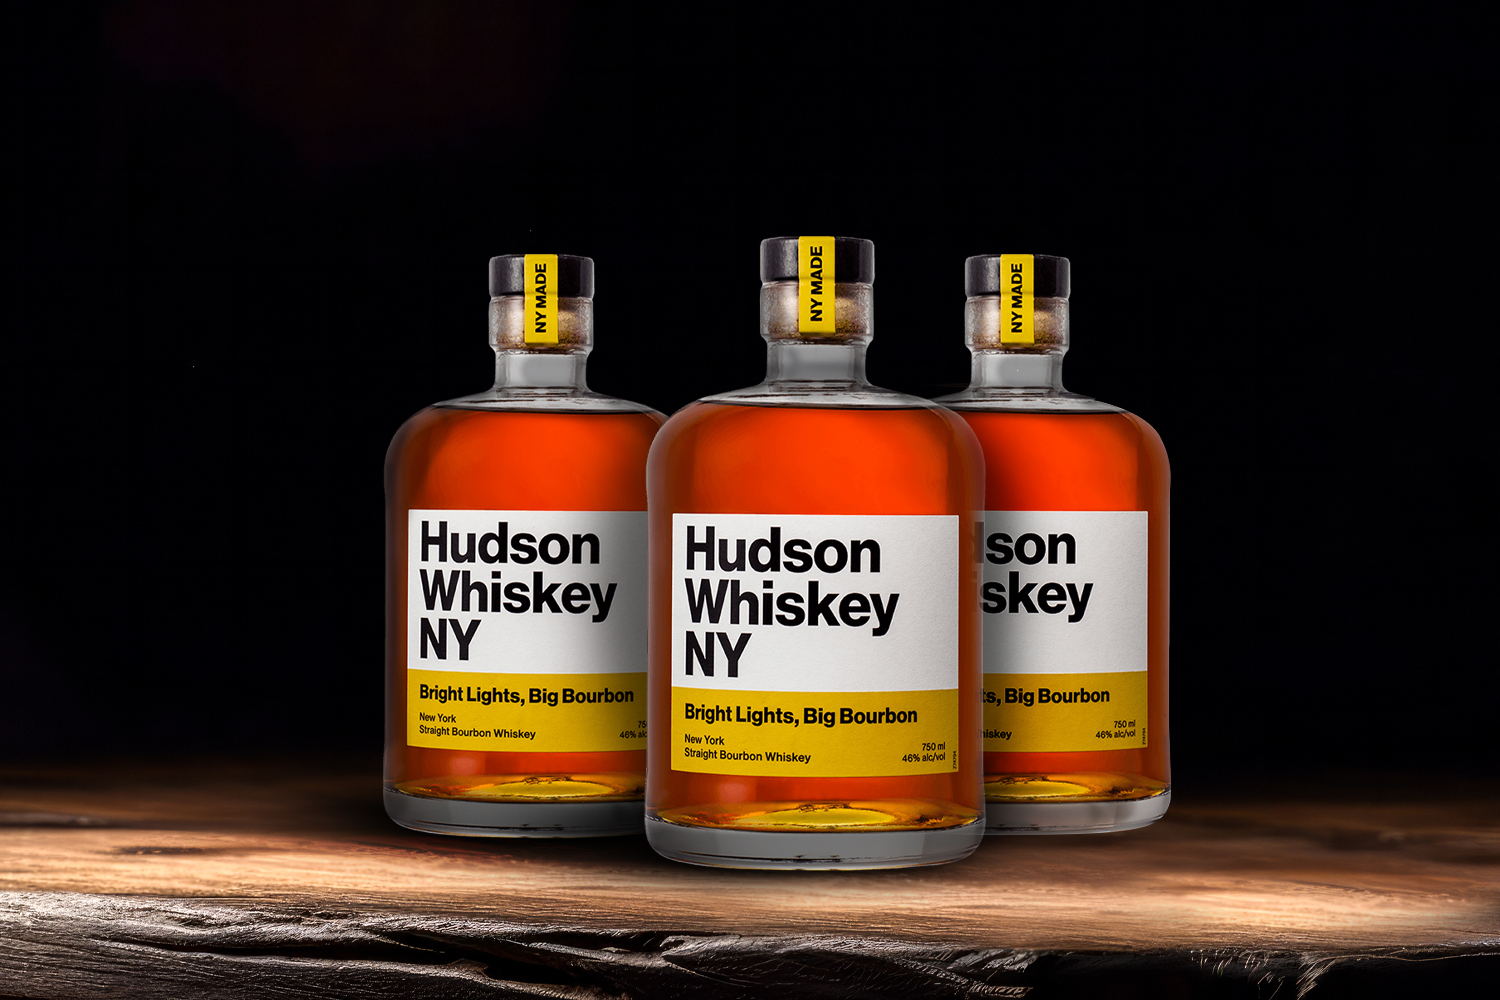 3 bottles of hudson whiskey bourbon on a wooden table